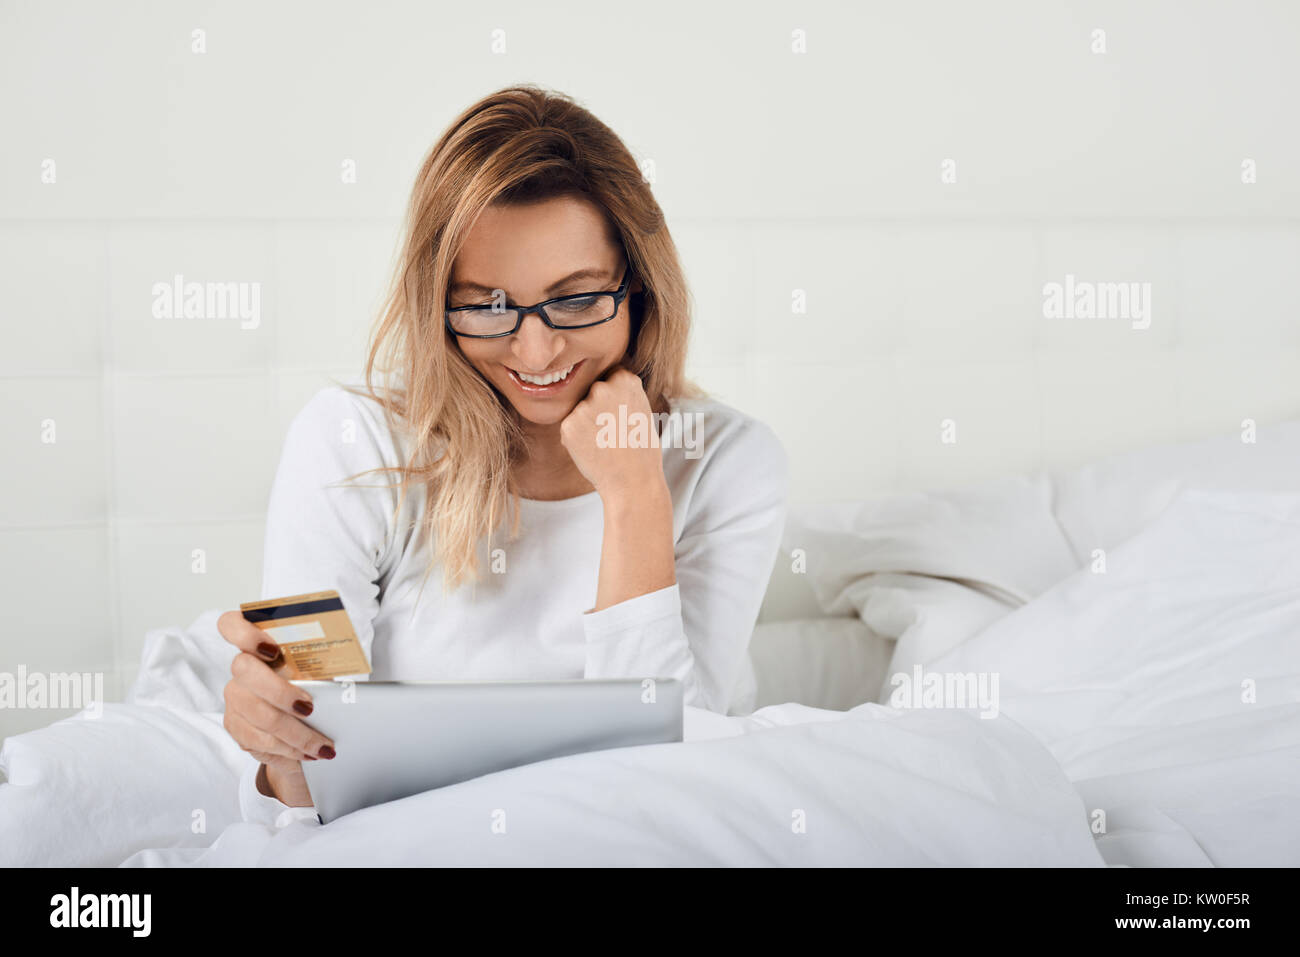 Attraktive Frau entspannen im Bett tun, online shopping hält Ihre Kreditkarte in einer Hand und digitale Tablet in den anderen, wie sie in die Kamera lächelt Stockfoto